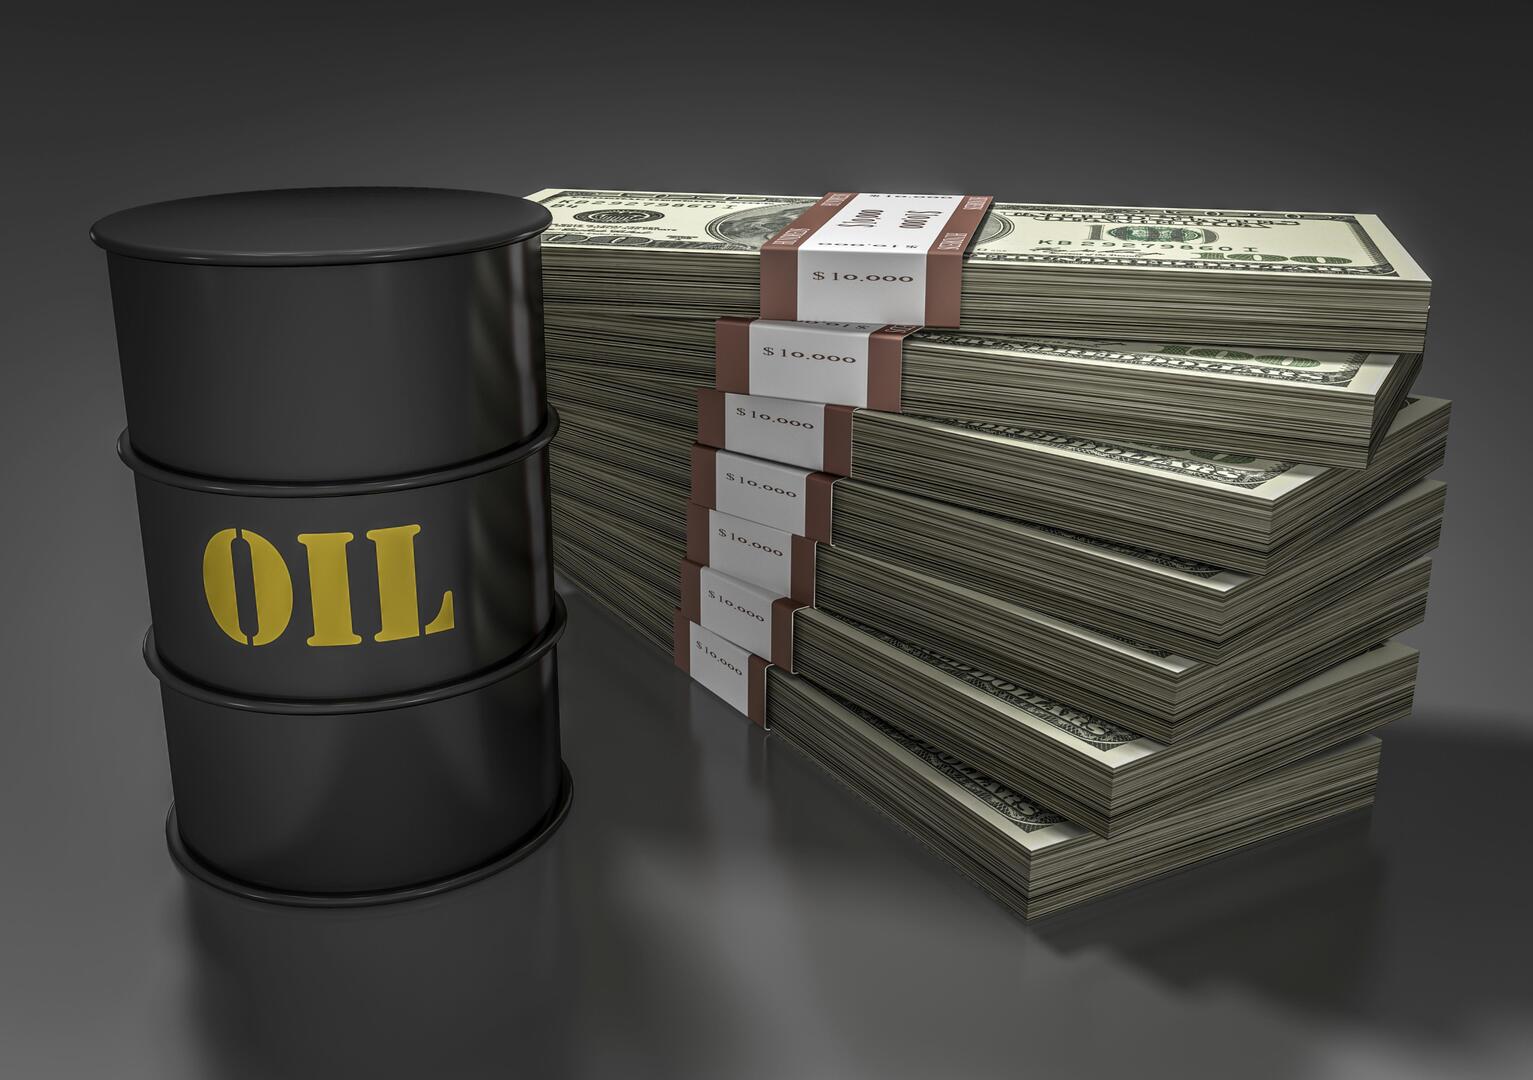 أسعار النفط تتجه لتسجيل مكاسب أسبوعية هي الأولى في 3 أسابيع